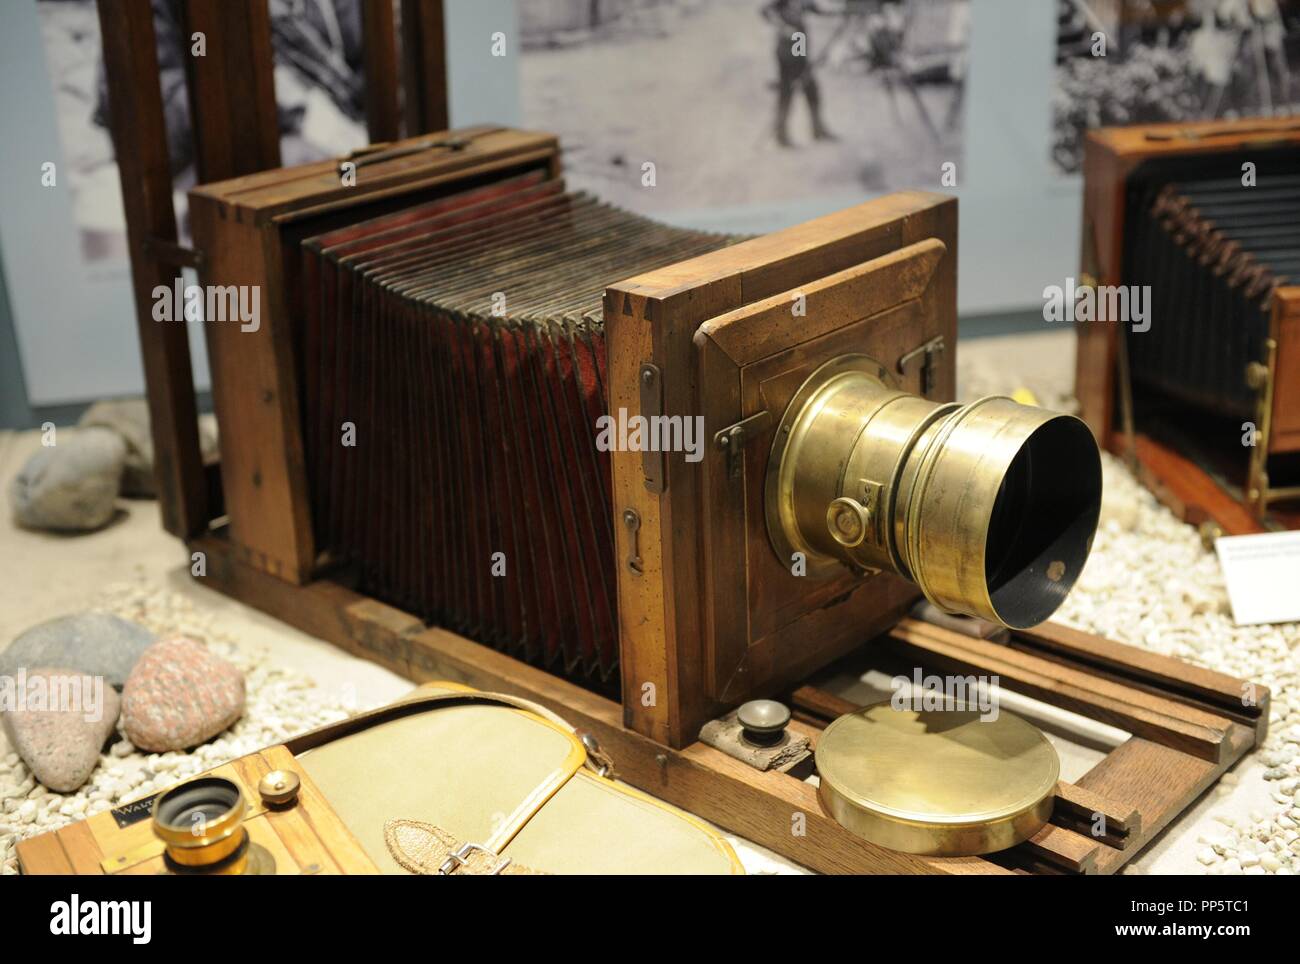 HISTORIA DE LA FOTOGRAFÍA. CAMARA ANTIGUA DE VIAJE, año 1860. Deutches  Technikmuseum. Berlín. Alemania. Europa Stock Photo - Alamy